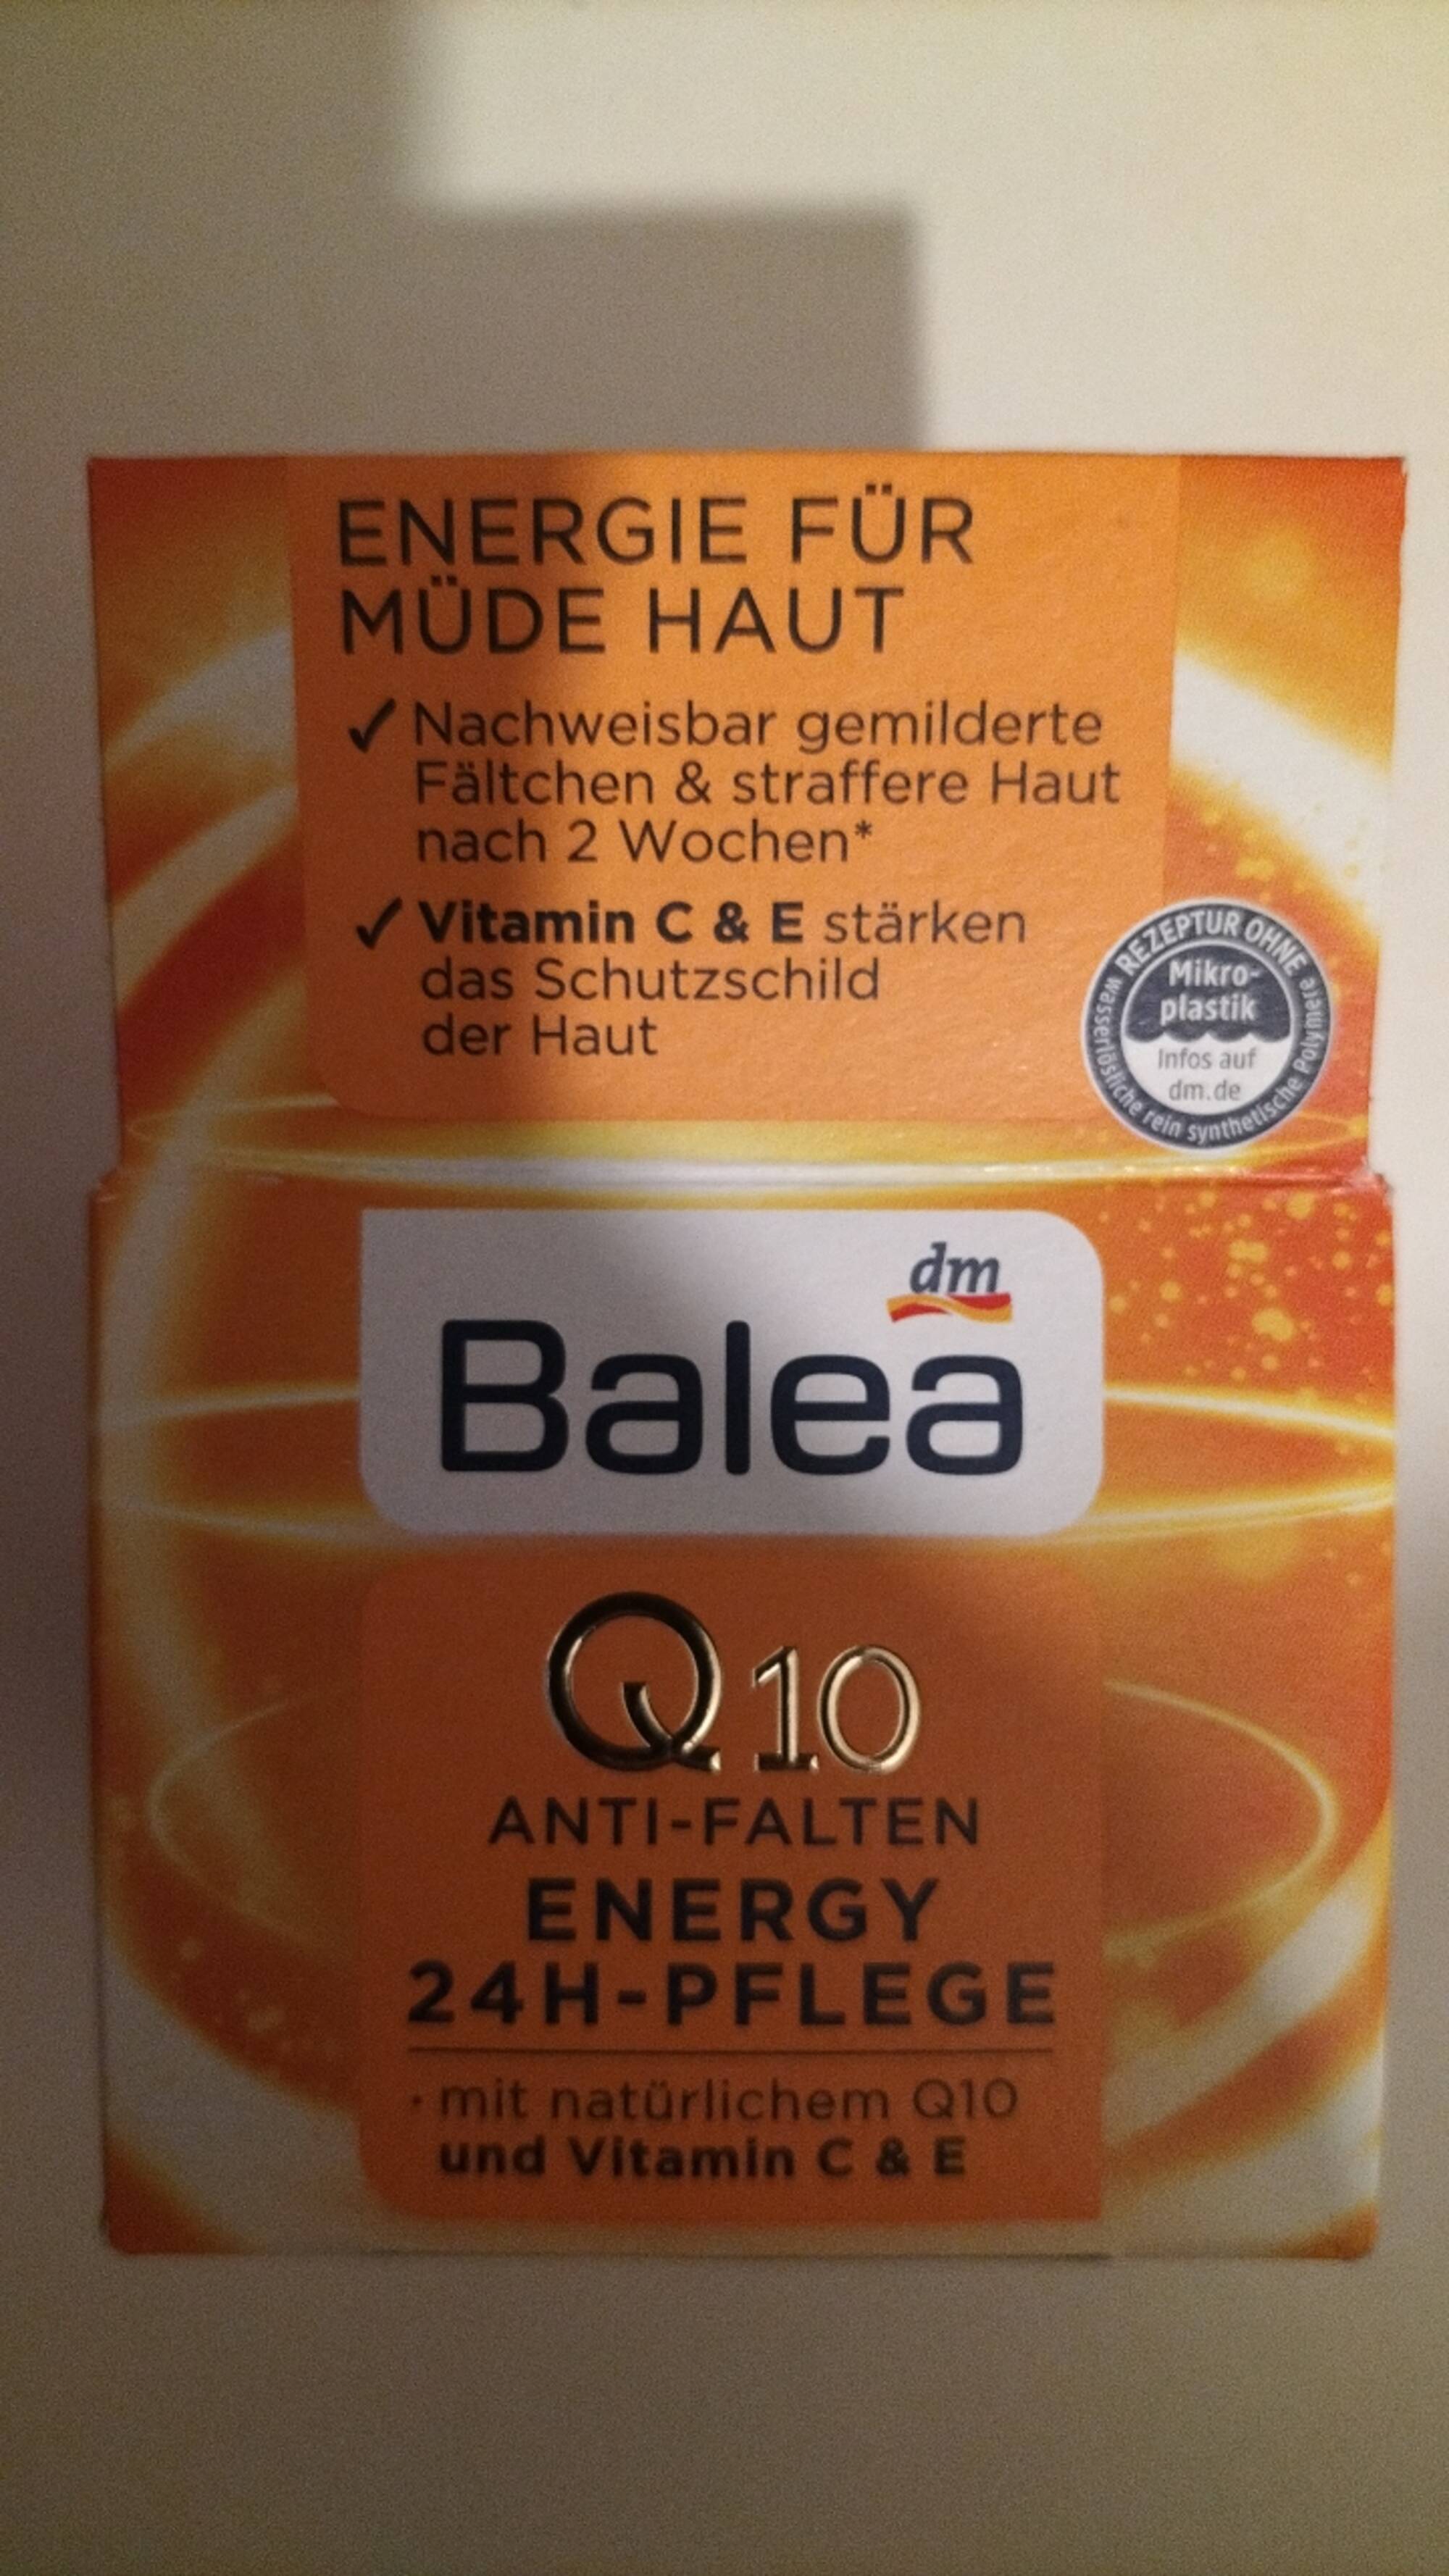 BALEA - Q10 Anti falten energy 24h-pflege